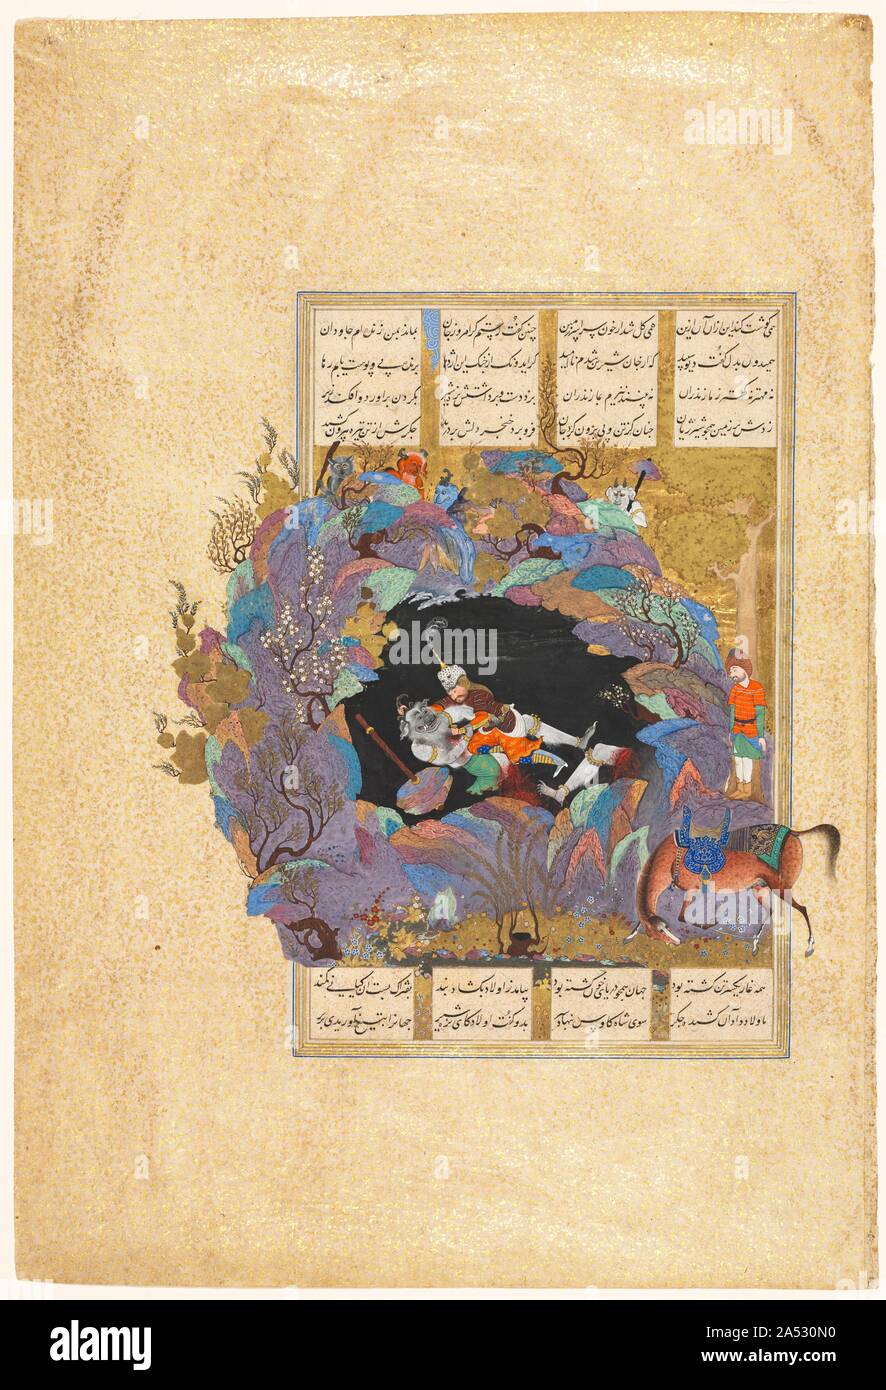 Rustam der siebte Kurs: Er tötet die Weiße Div, Folio 124 von einem Schah-nama (Buch der Könige) von Firdausi (Persisch, etwa 934-1020). Diese spektakuläre Malerei, sowohl lyrisch und heftig, stammt von einem der größten iranischen Handschriften überhaupt produziert. Die königliche Kopie der Nationalen Iranischen Epos, das shahnama oder Buch der Könige, wurde für Shah Tahmasp während der 1520er und 1540er Jahren. Das Buch wurde sogar mit Beifall begrüßte in seinen eigenen Tag für "die Farbgebung und der porträtkunst" in seiner 258 Bilder gefunden. Der lengendary Helden Rustam, durch seine Tiger - Haut Kleidung identifiziert, tötet den Savage Leiter der de Stockfoto